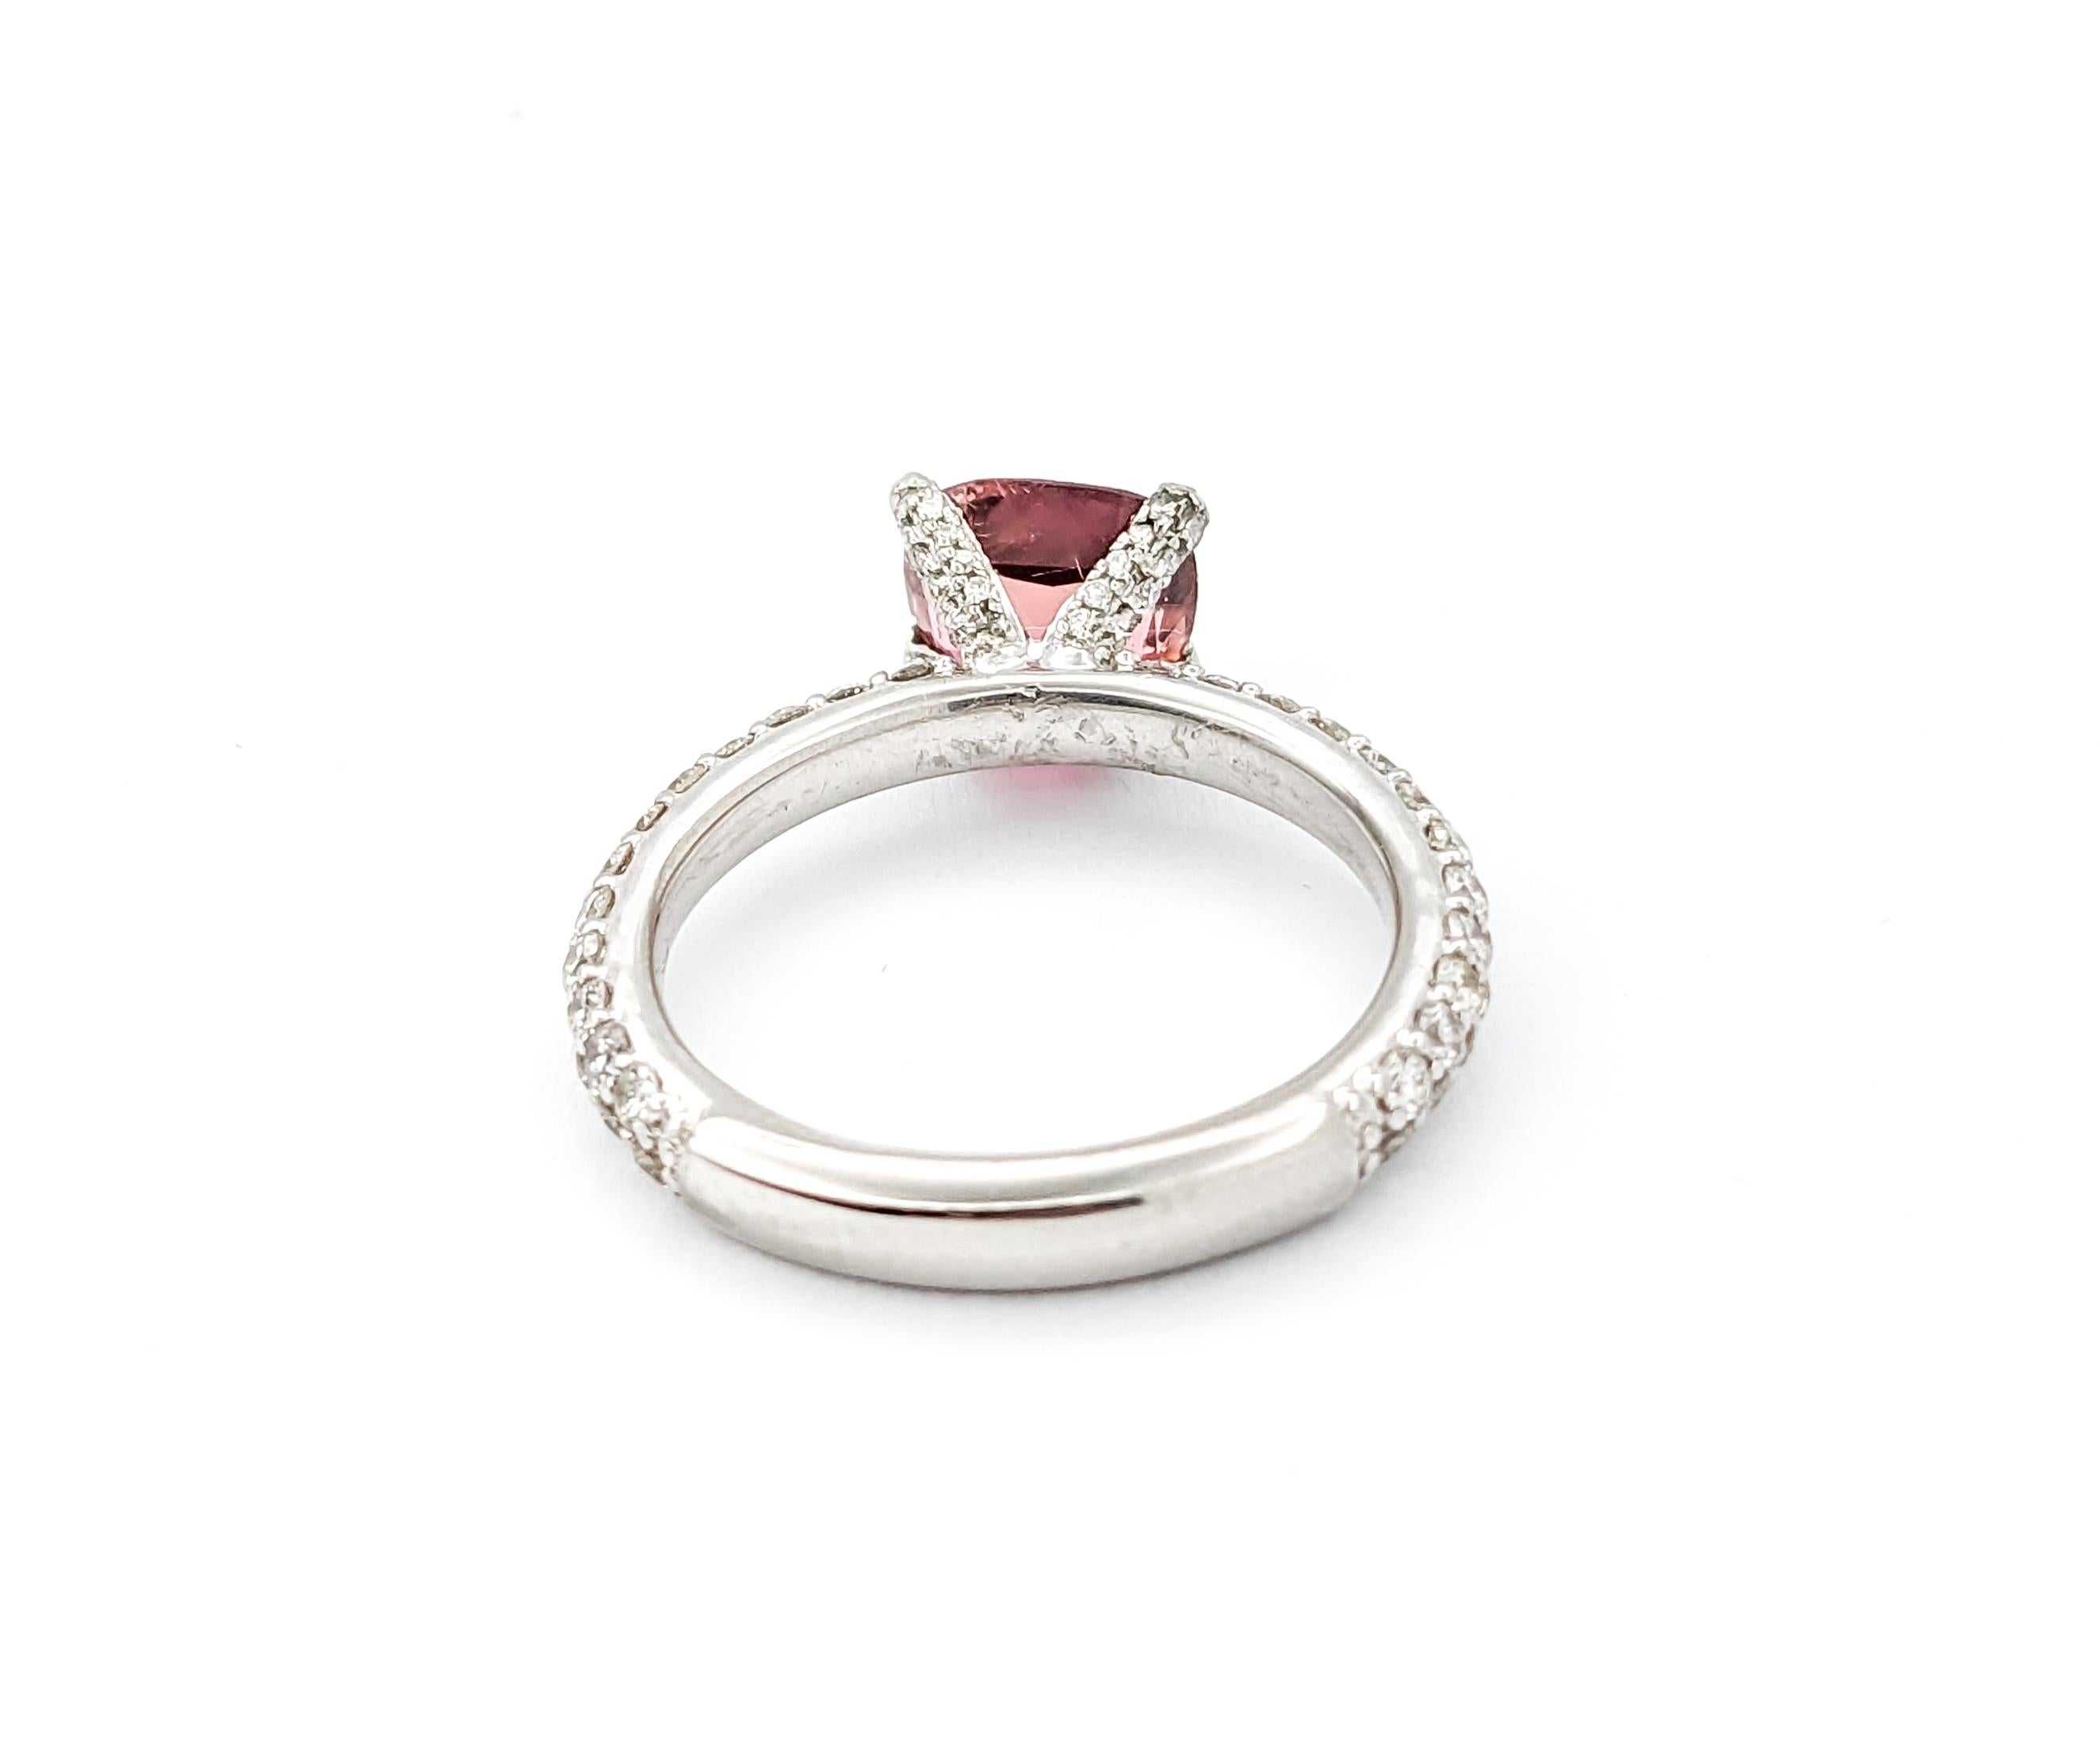 1,50ct Rosa Turmalin  & Diamantring in Platin

Dieser exquisite Ring mit rosafarbenem Turmalin wurde meisterhaft in glänzendem 950er Platin gefertigt. Das Herzstück dieses Rings ist ein bezaubernder rosa Turmalin von 1,50 Karat. Der auffällige